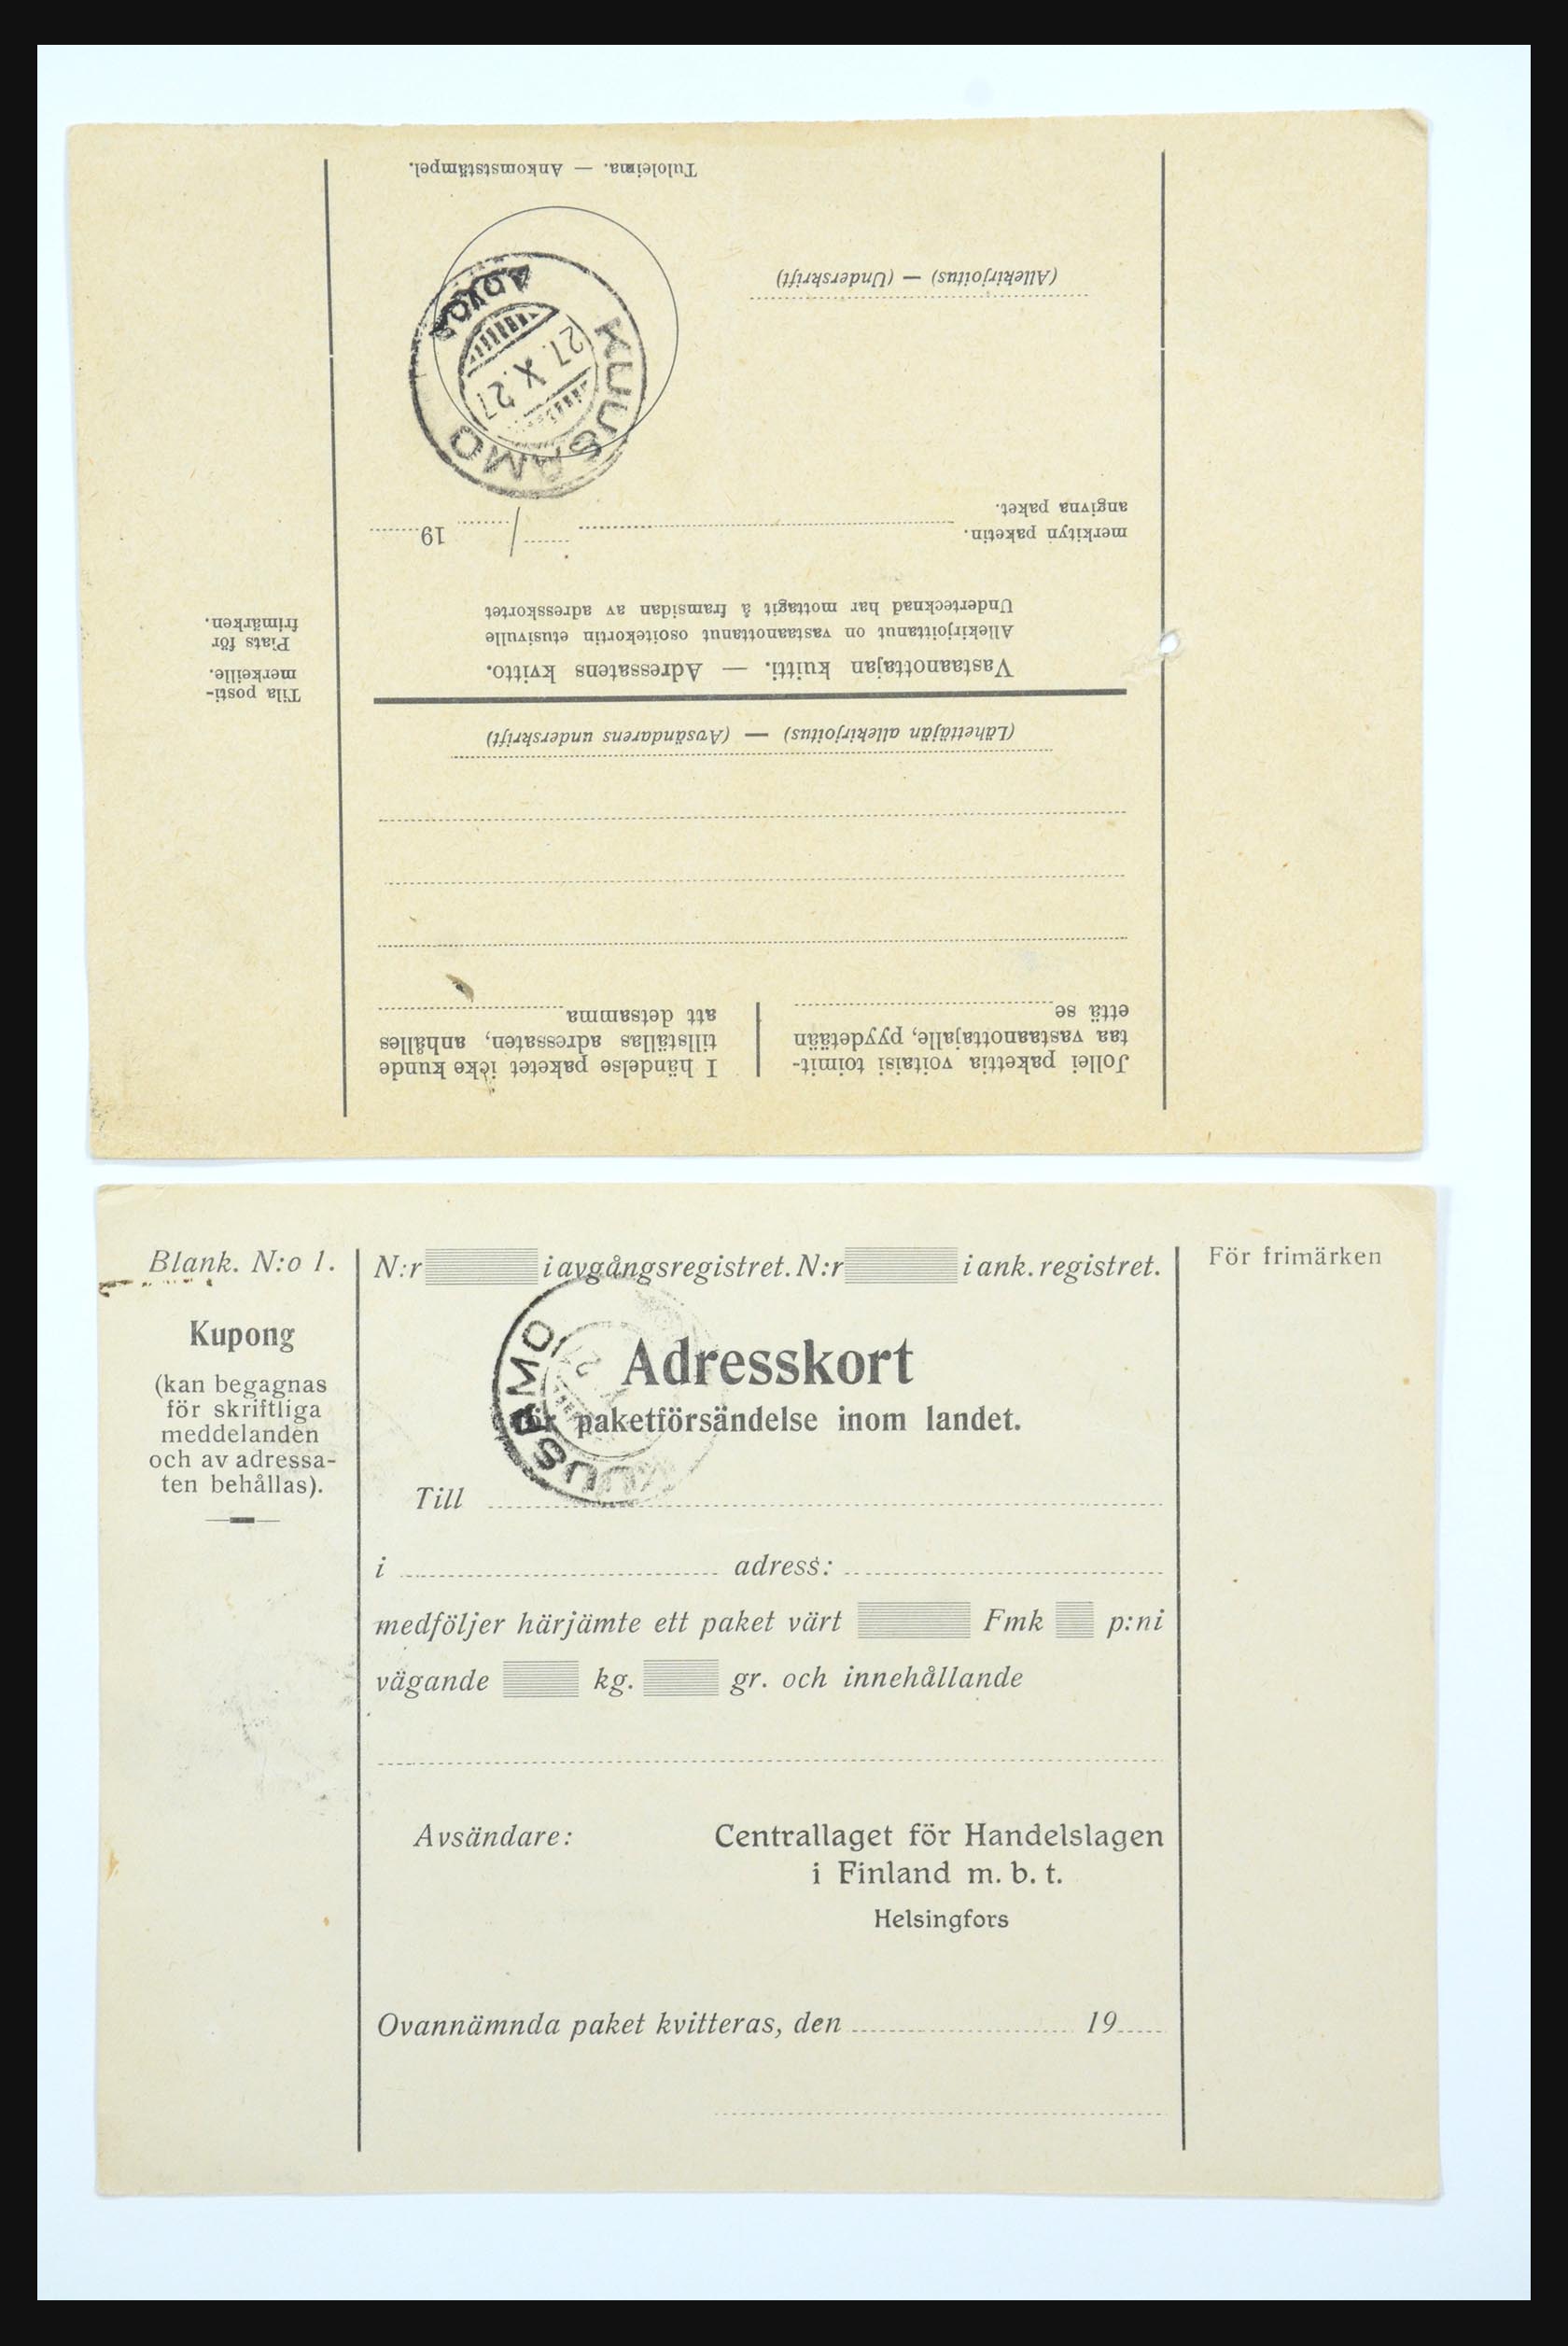 31658 055 - 31658 Finland brieven 1833-1960.